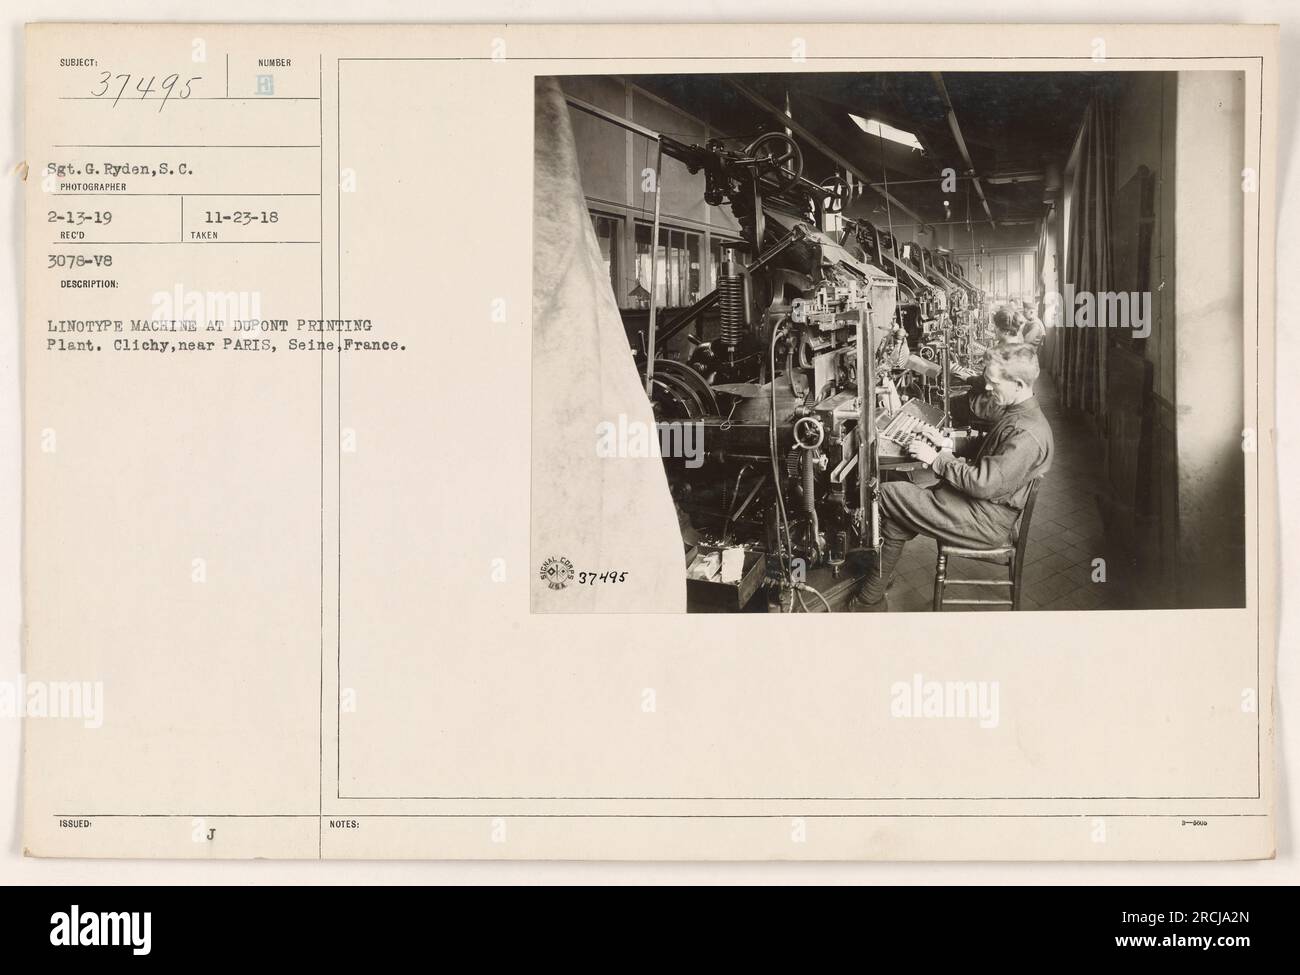 Sergeant G. Ryden fotografierte eine Linotype-Maschine in der DuPont-Druckerei in Clichy, bei Paris, Frankreich. Das Foto wurde am 23. November 1918 herausgegeben und am 13. Februar 1919 erhalten. In den Notizen ist der Lichtbildausweis als 37495 angegeben. Stockfoto